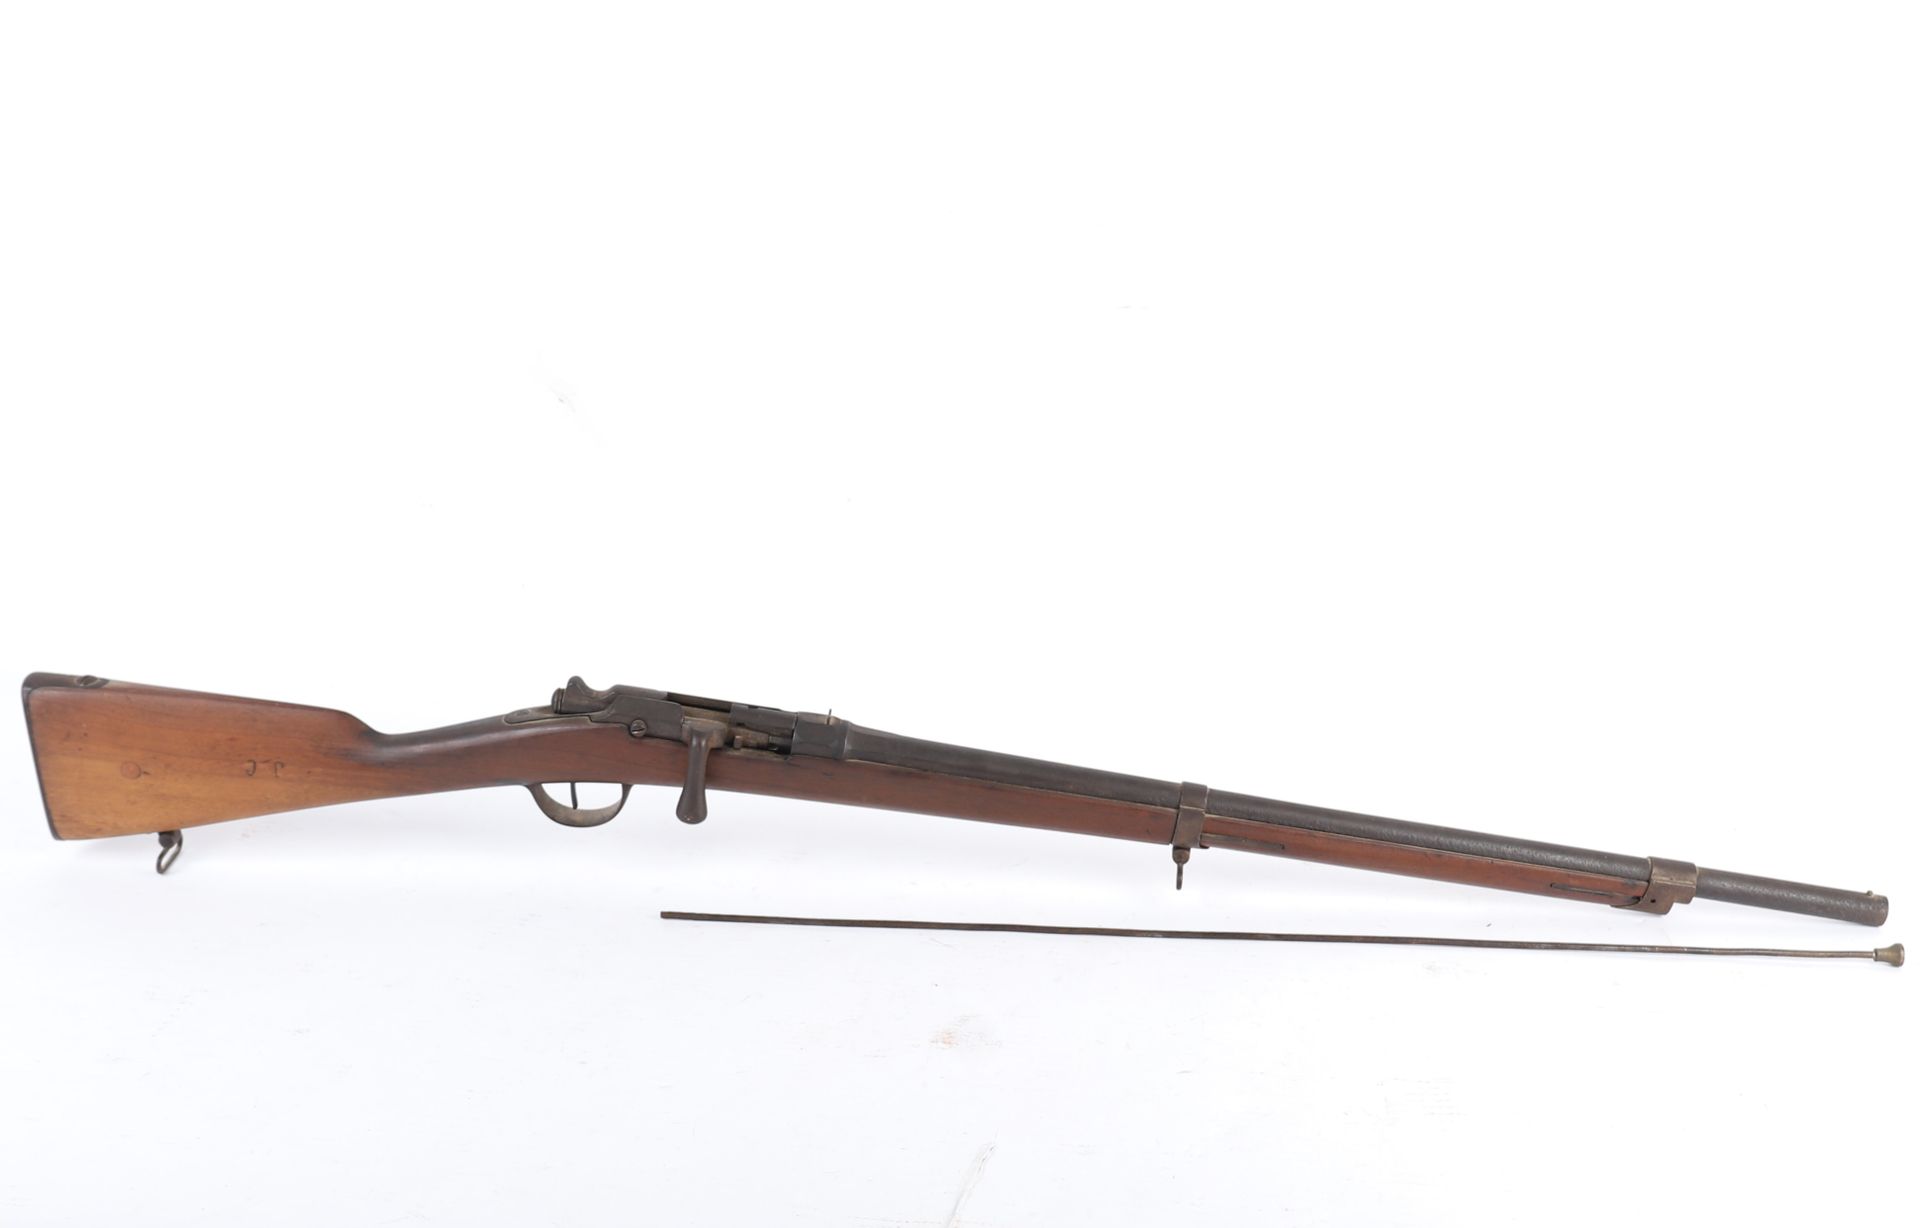 Chassepot FRANKREICH
Gewehr 1866-74 "Chassepot Gras" M80, T1878.
Holzfassung, Ge&hellip;